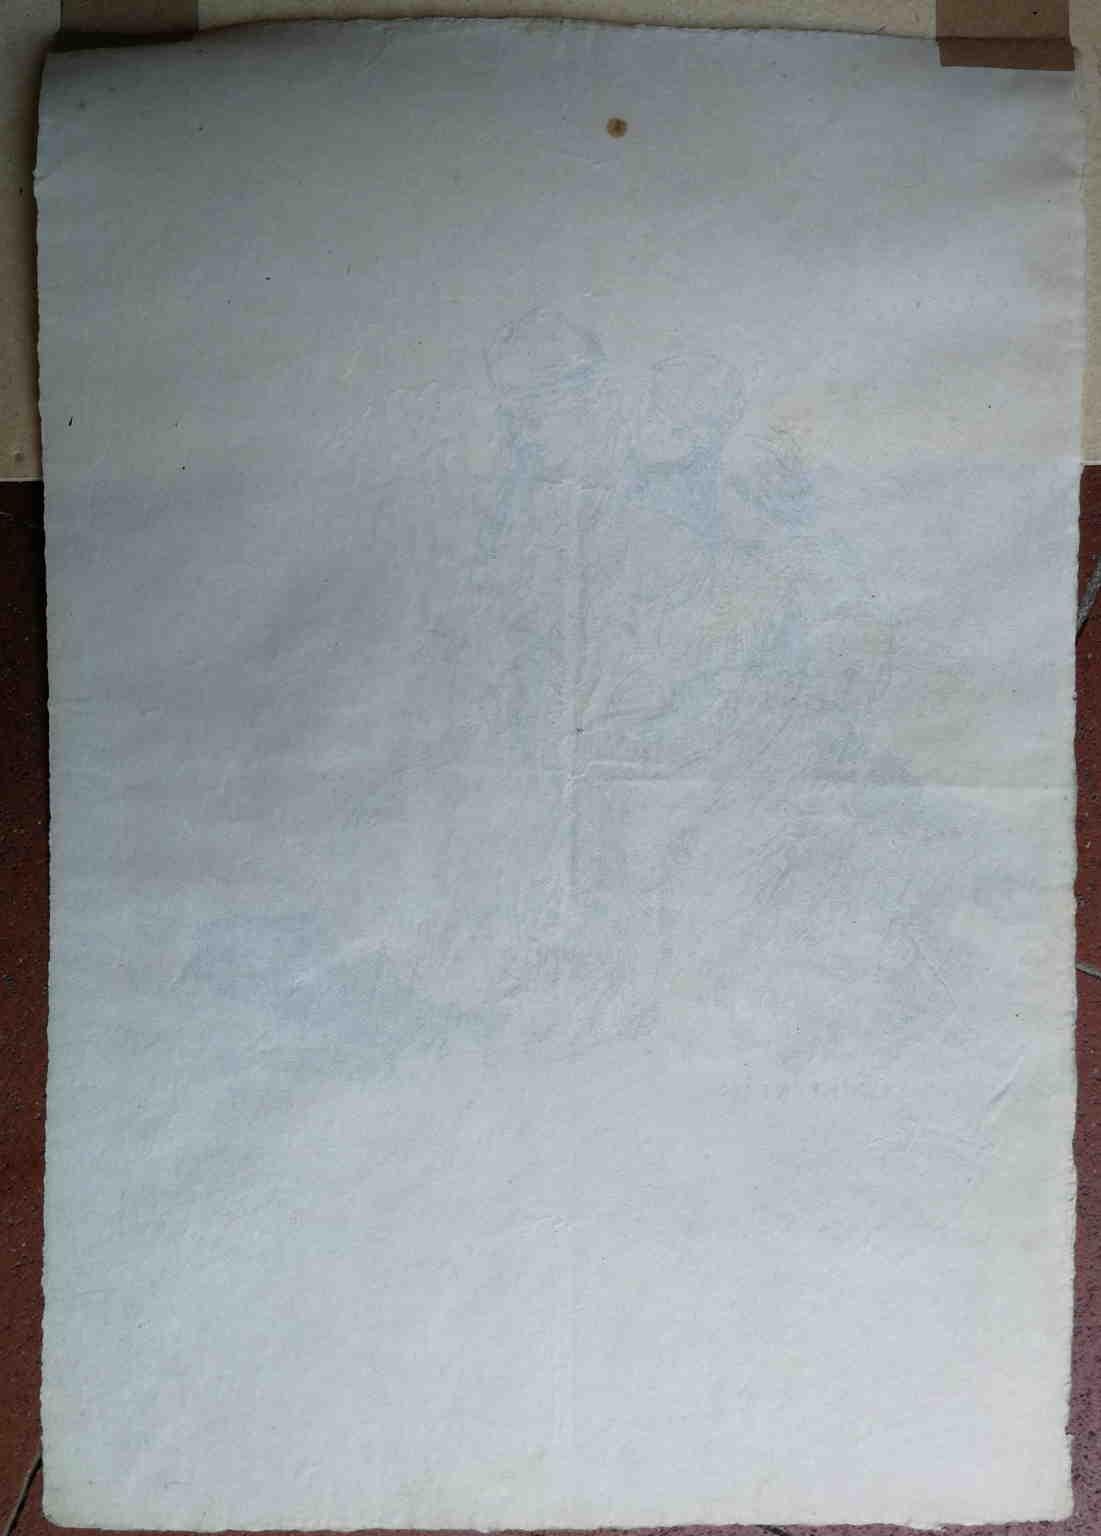 Questo schizzo, inchiostro su carta, è firmato in basso al centro C. Brancaccio. Raffigura un gruppo di figure, tra cui un bambino che sembra protendersi verso un animale, si può supporre un cane o un agnellino. Probabilmente è uno studio per una